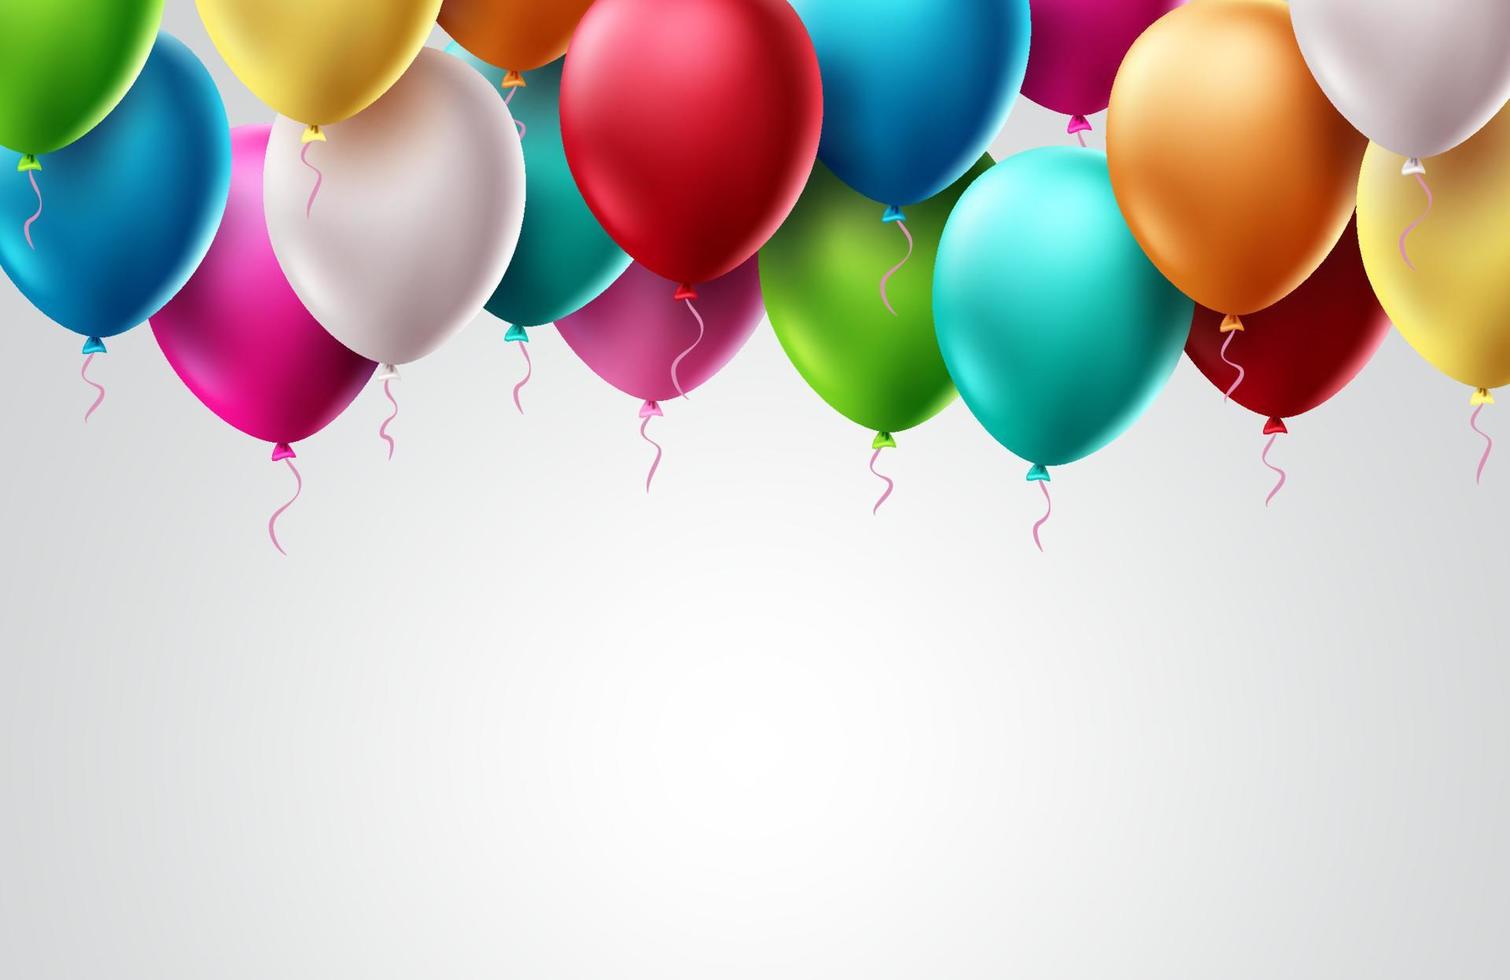 födelsedag ballonger vektor malldesign. färgglada flygande ballongelement för födelsedagsfest inbjudningskortdesign i vitt tomt utrymme för textbakgrundsdesign. vektor illustration